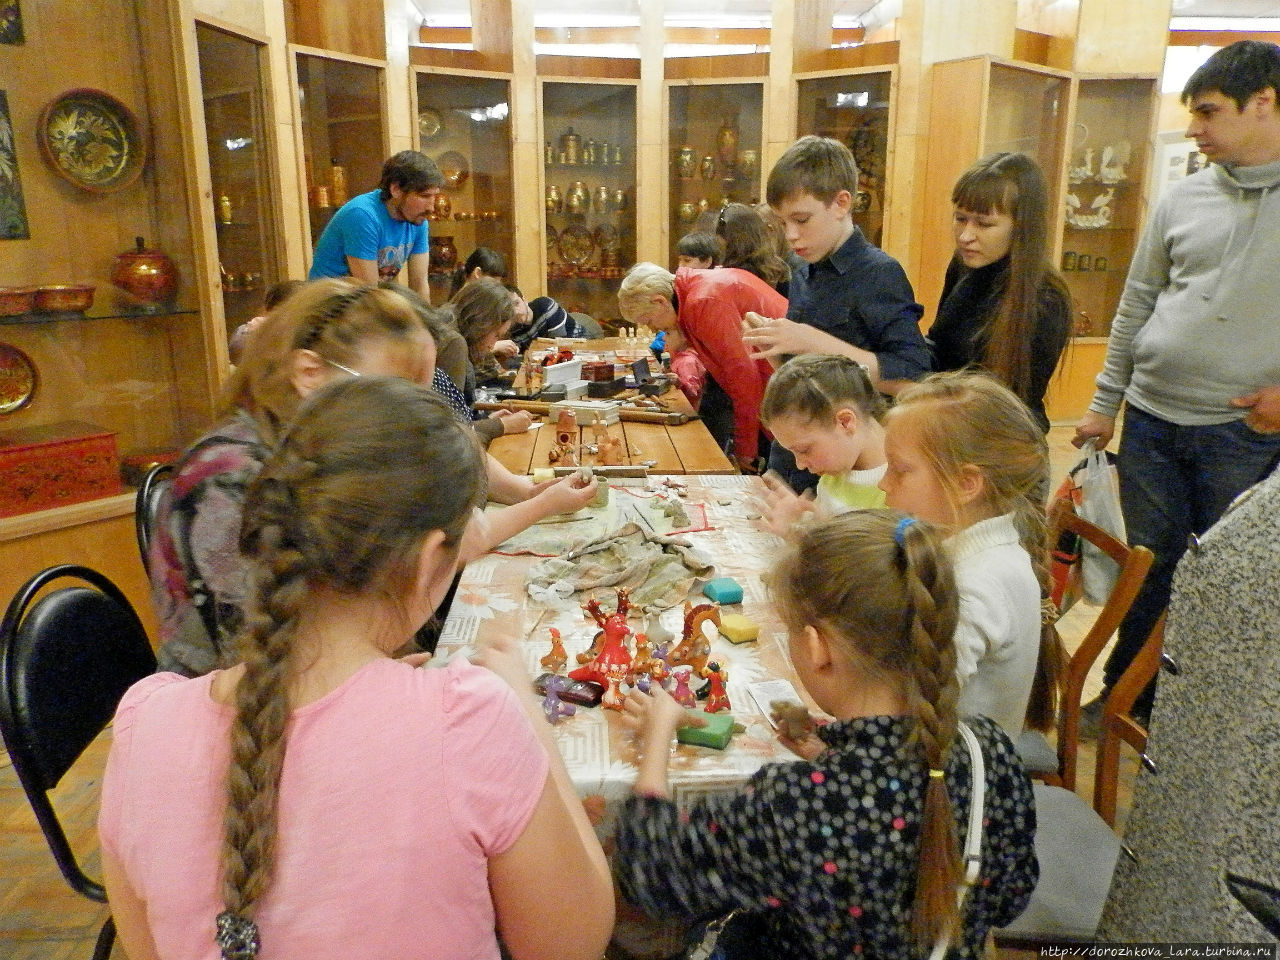 Дети, и взрослые тоже, с удовольствием участвуют в приобретении навыков лепки жбанниковских глиняных игрушек-свистулек Нижний Новгород, Россия